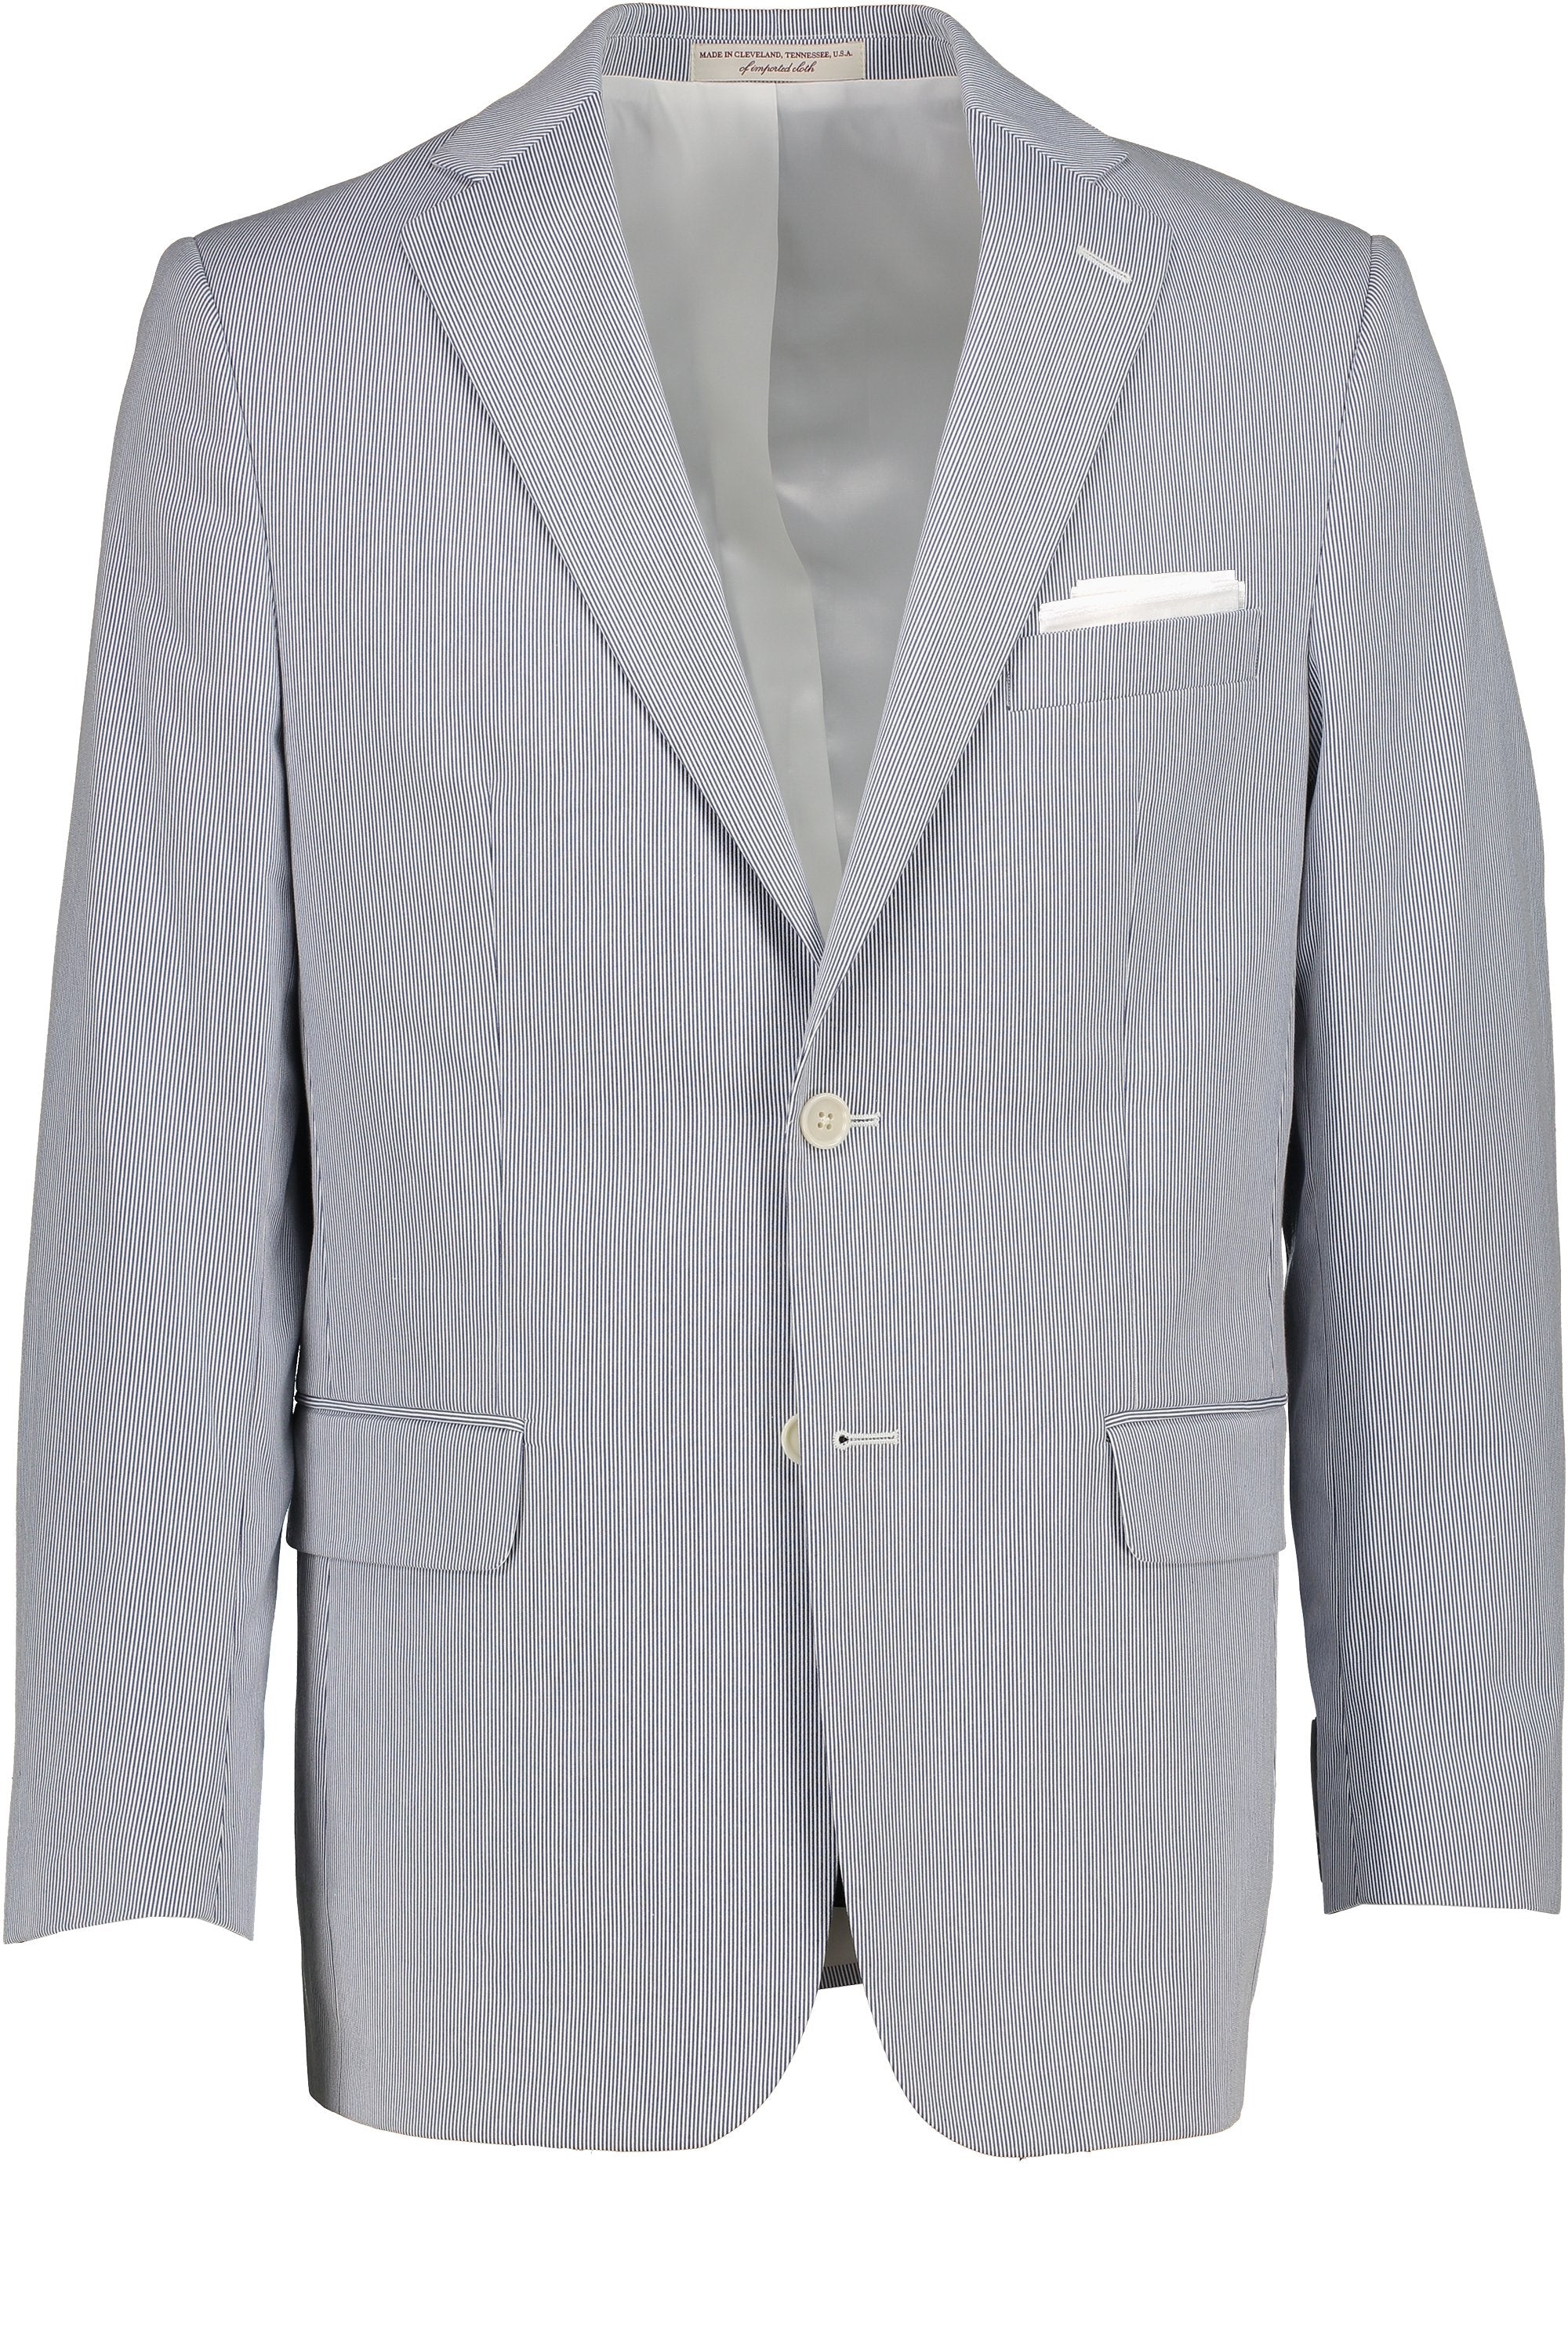 Men's Sport Coat - Suit Separate  Classic Cut Blue/White Pincord 100% COTTON